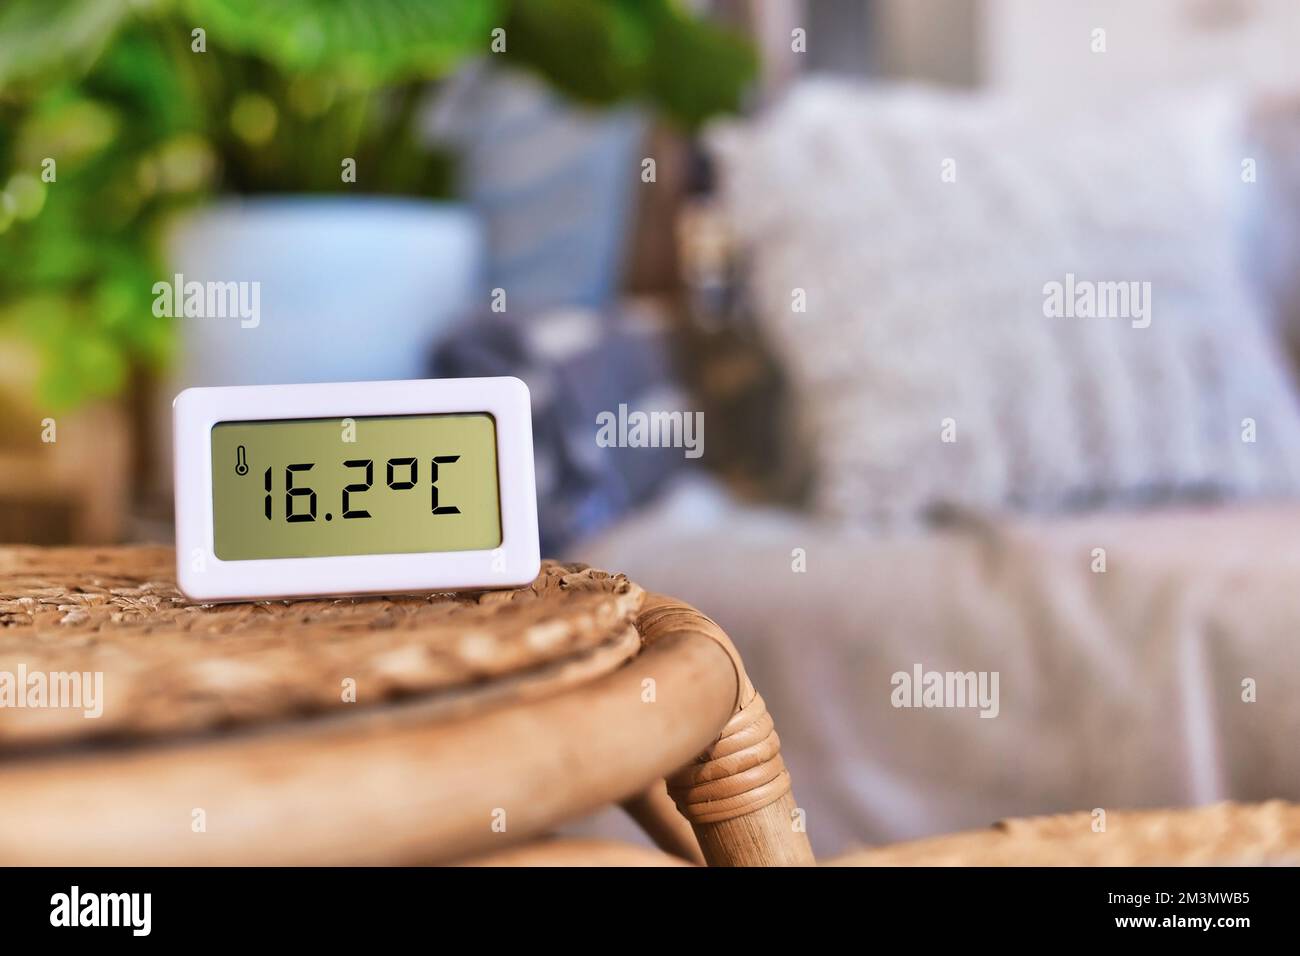 Termometro digitale con temperatura ambiente troppo fredda di 16,7 gradi Celsius Foto Stock